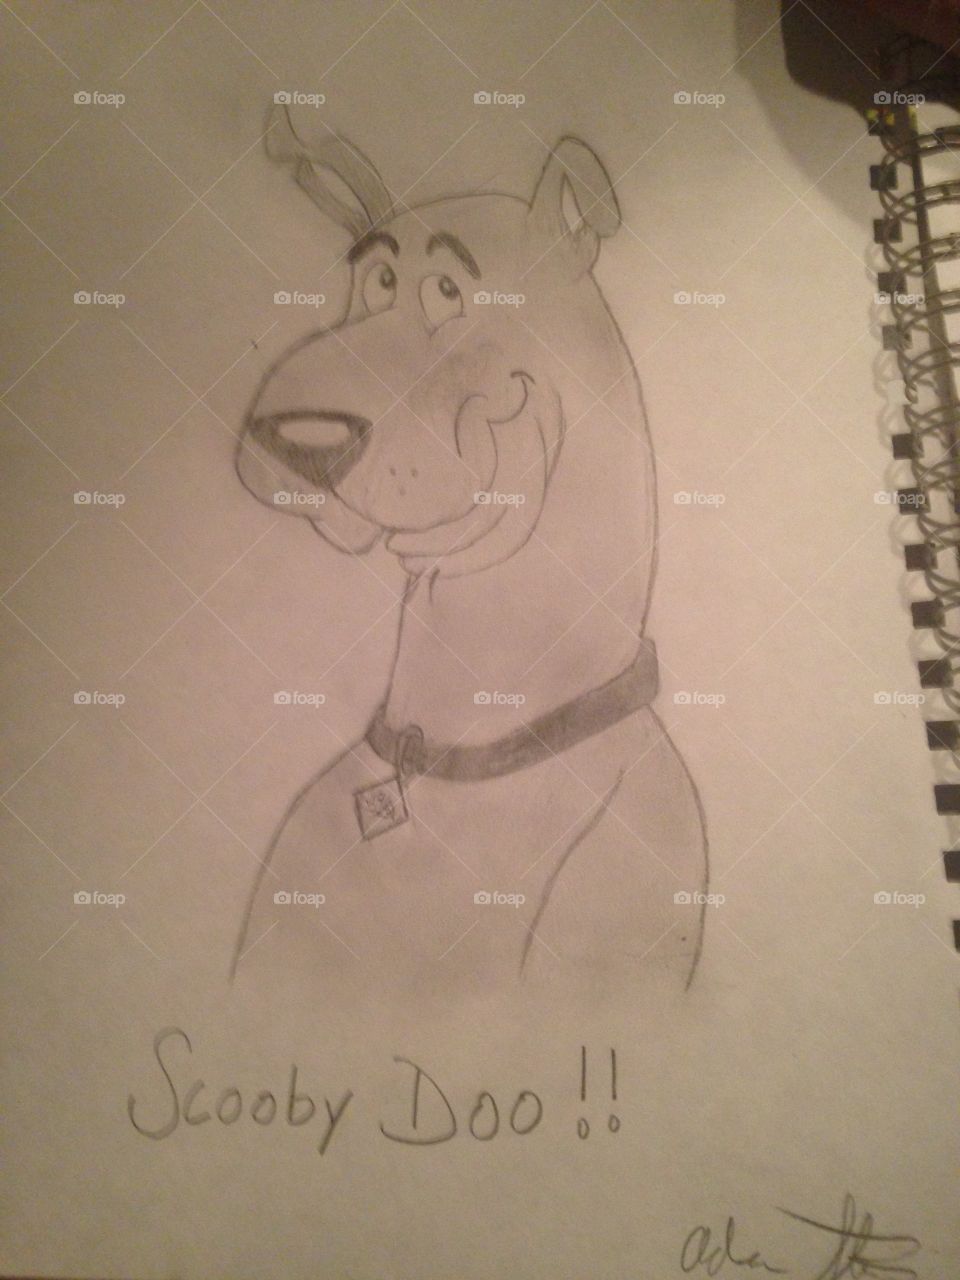 Scooby doo!. Scooby doo!
